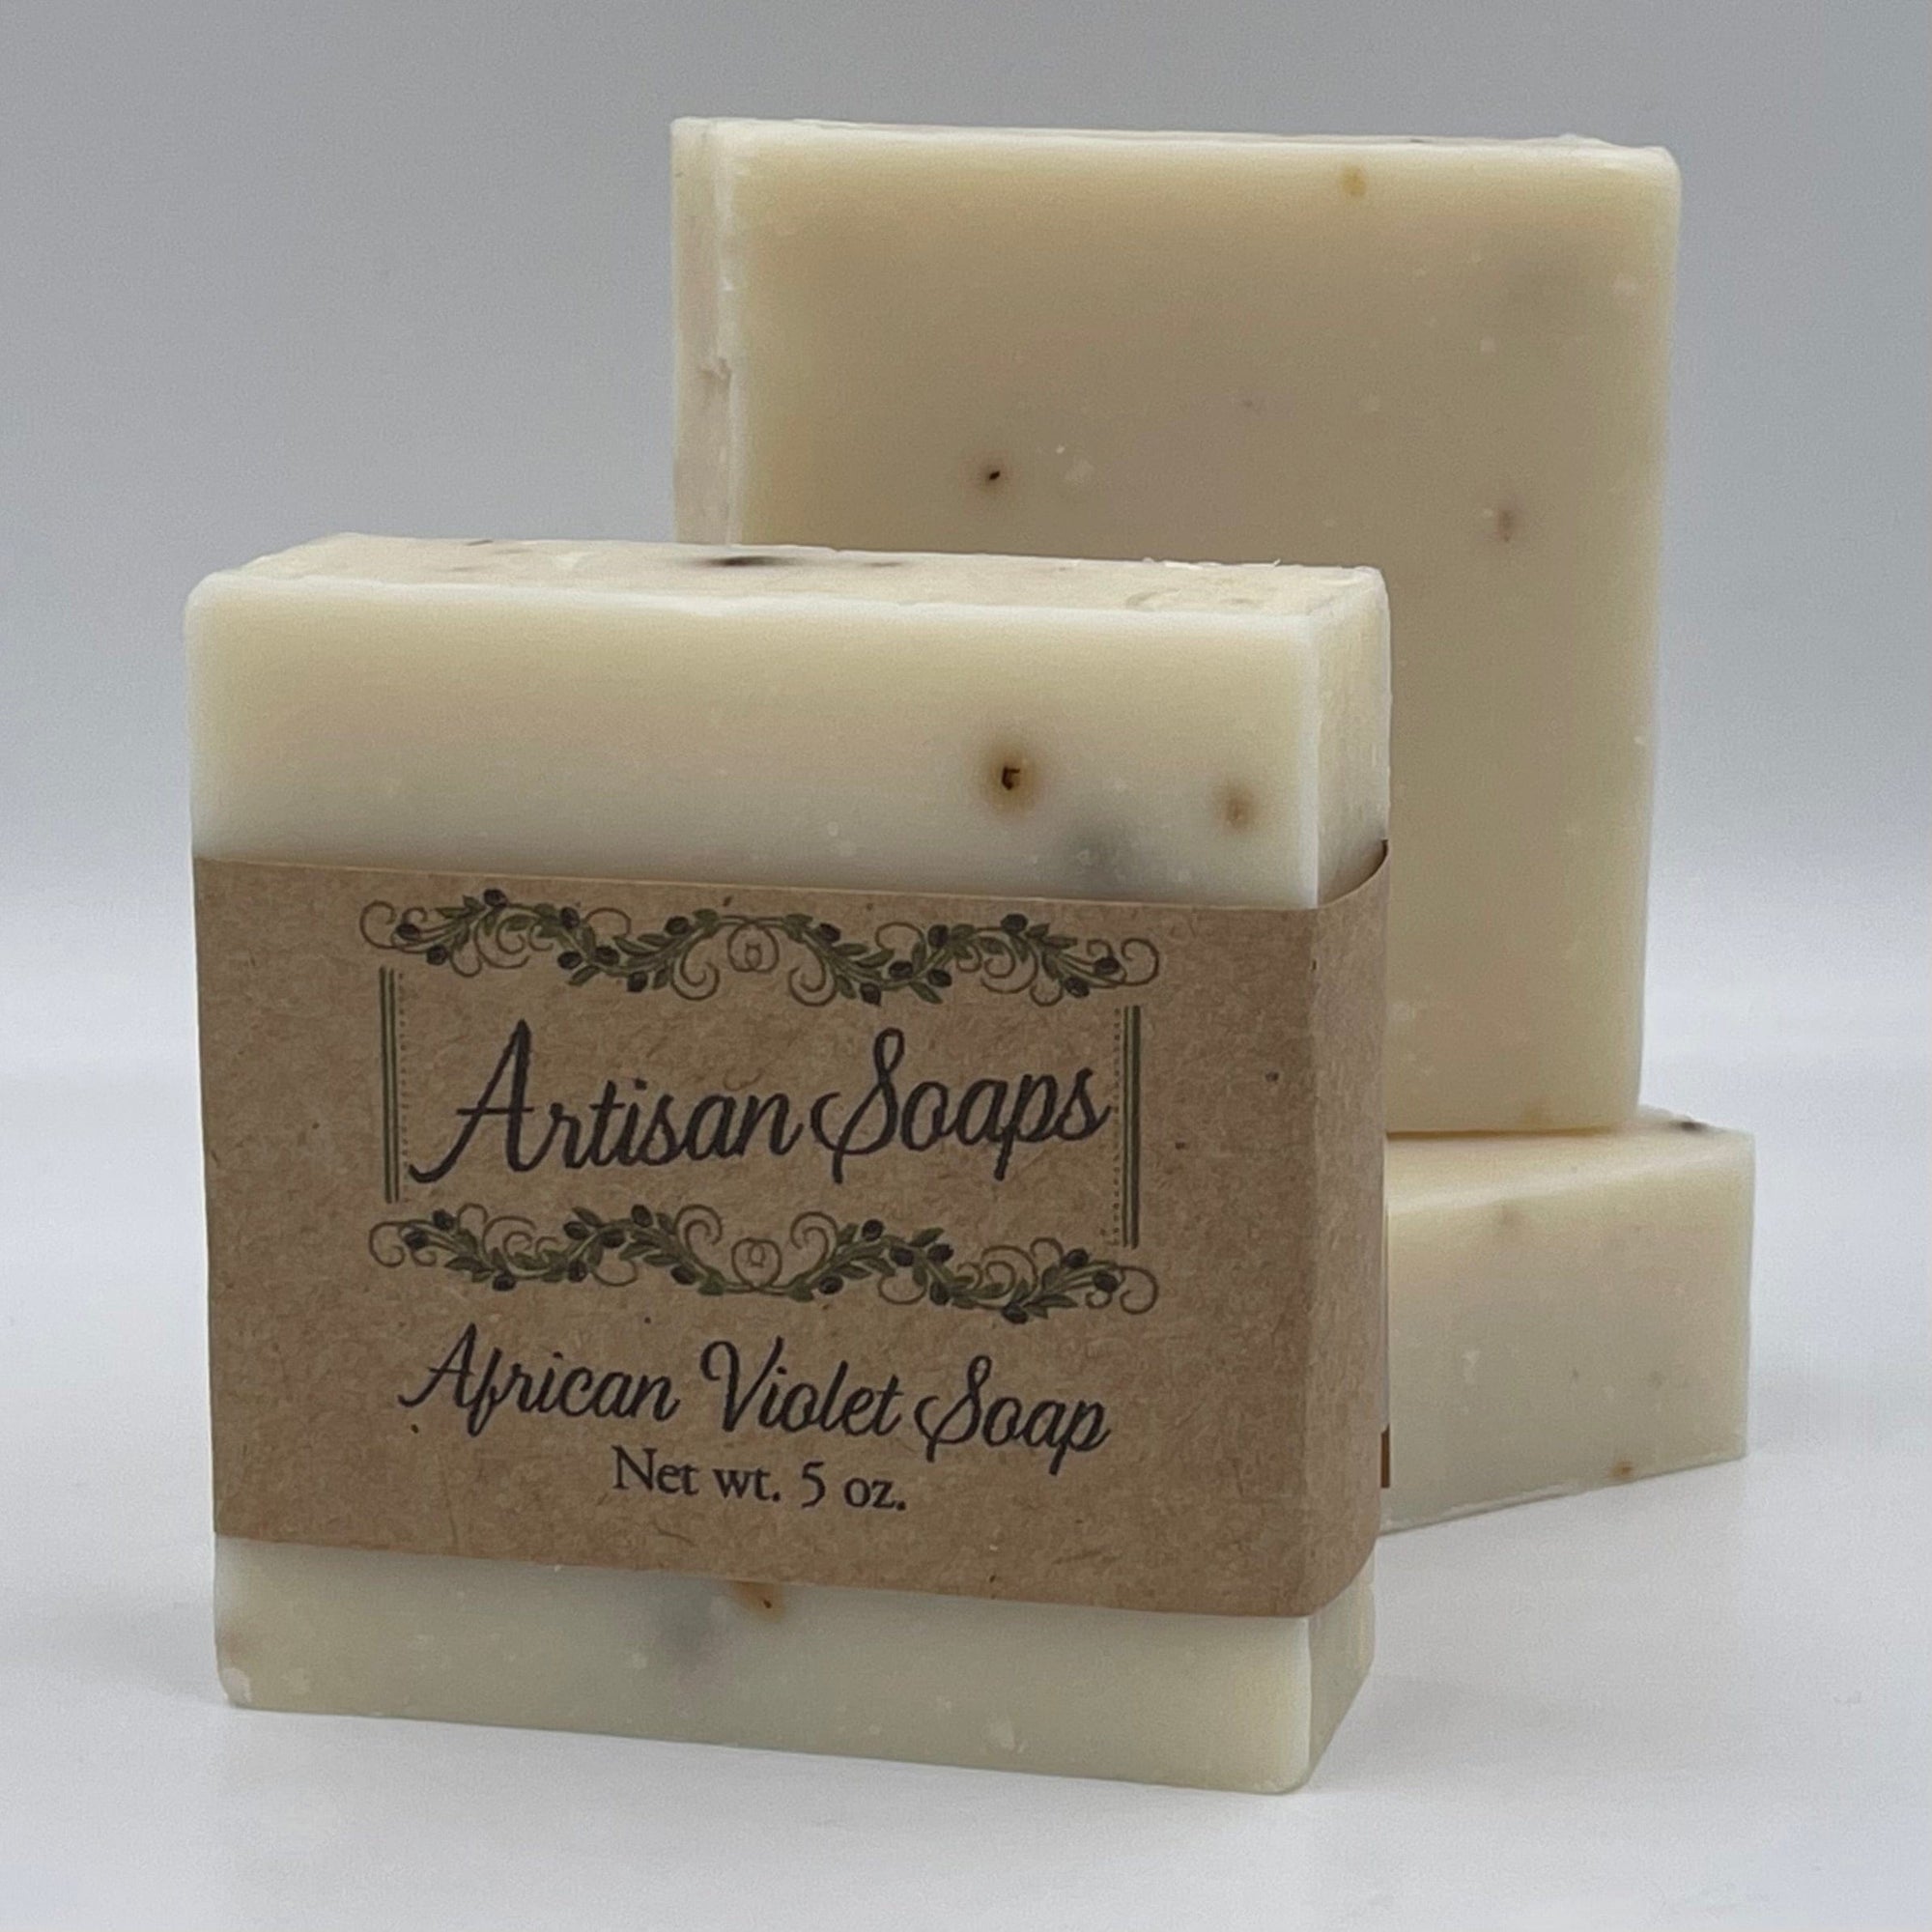 African Violet Soap